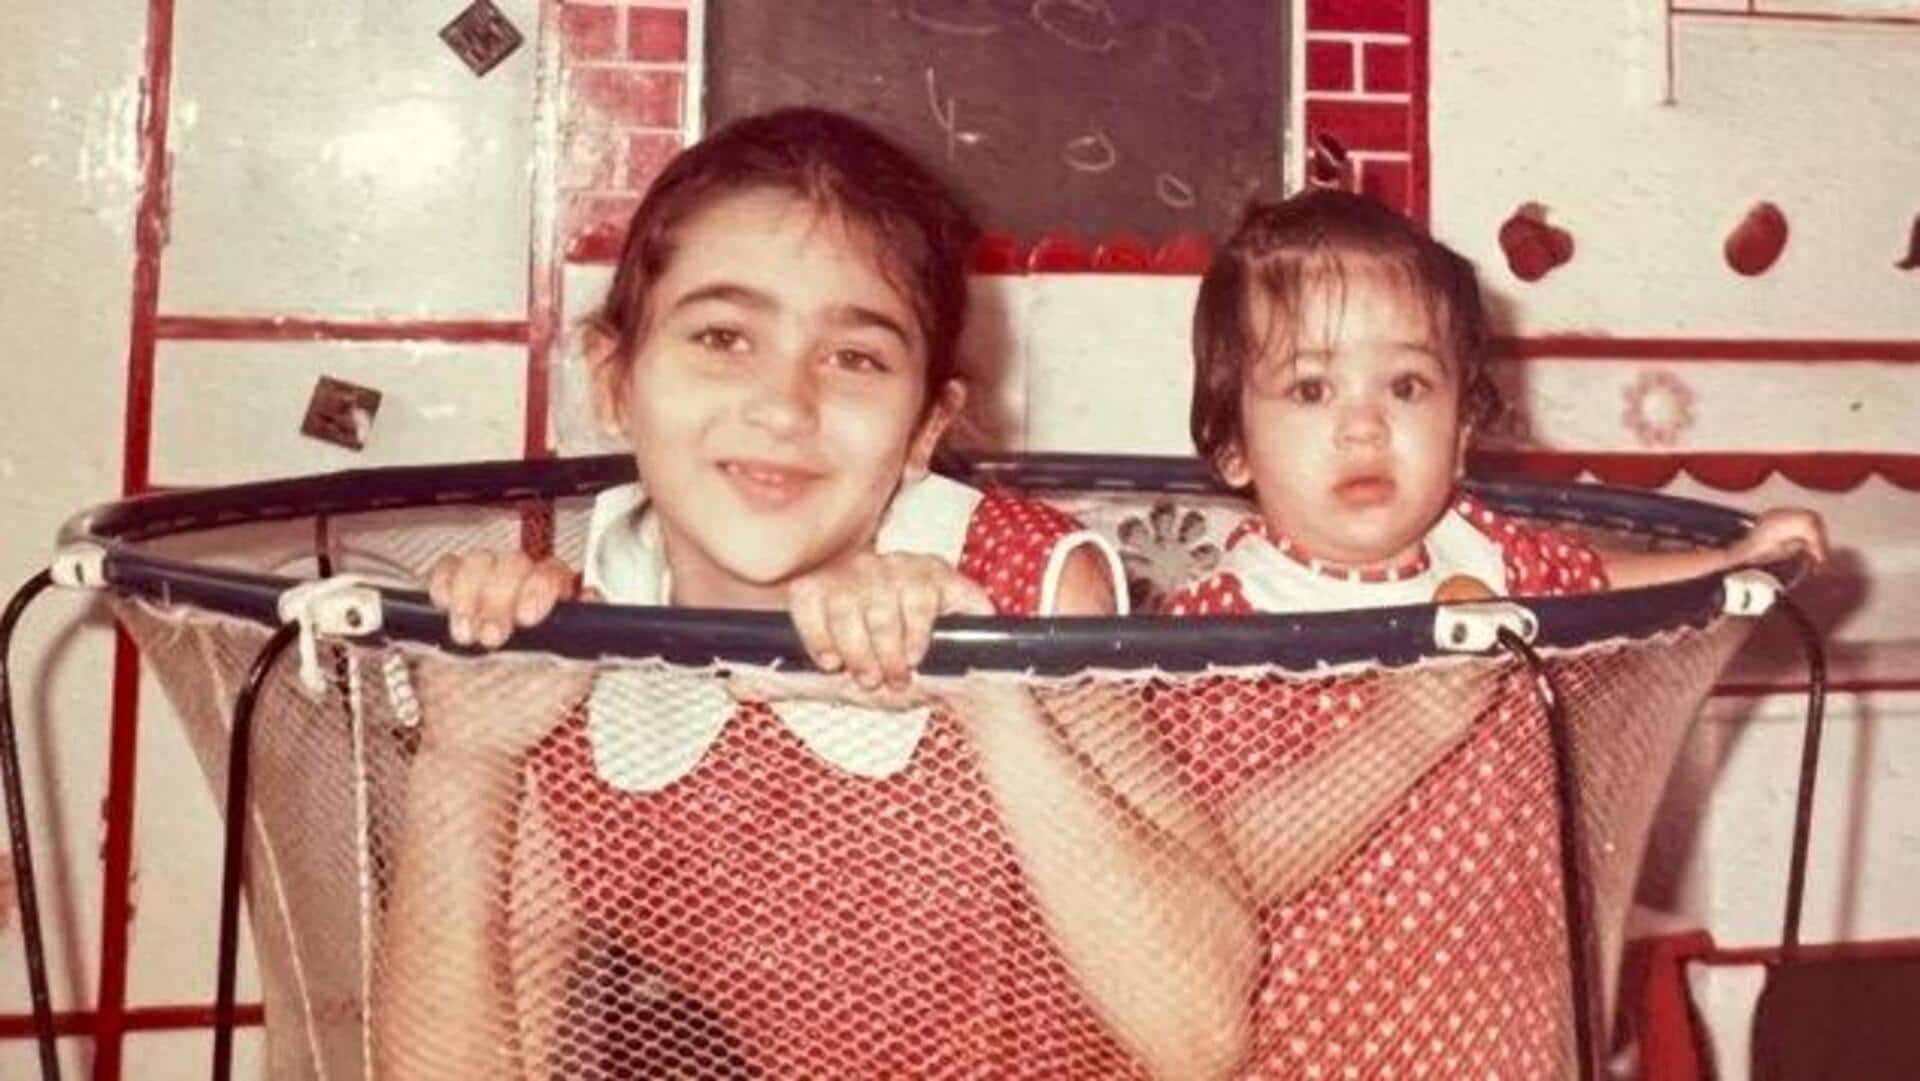 करिश्मा कपूर ने दी करीना कपूर को जन्मदिन की शुभकामनाएं, साझा की बचपन की अनदेखी तस्वीर 